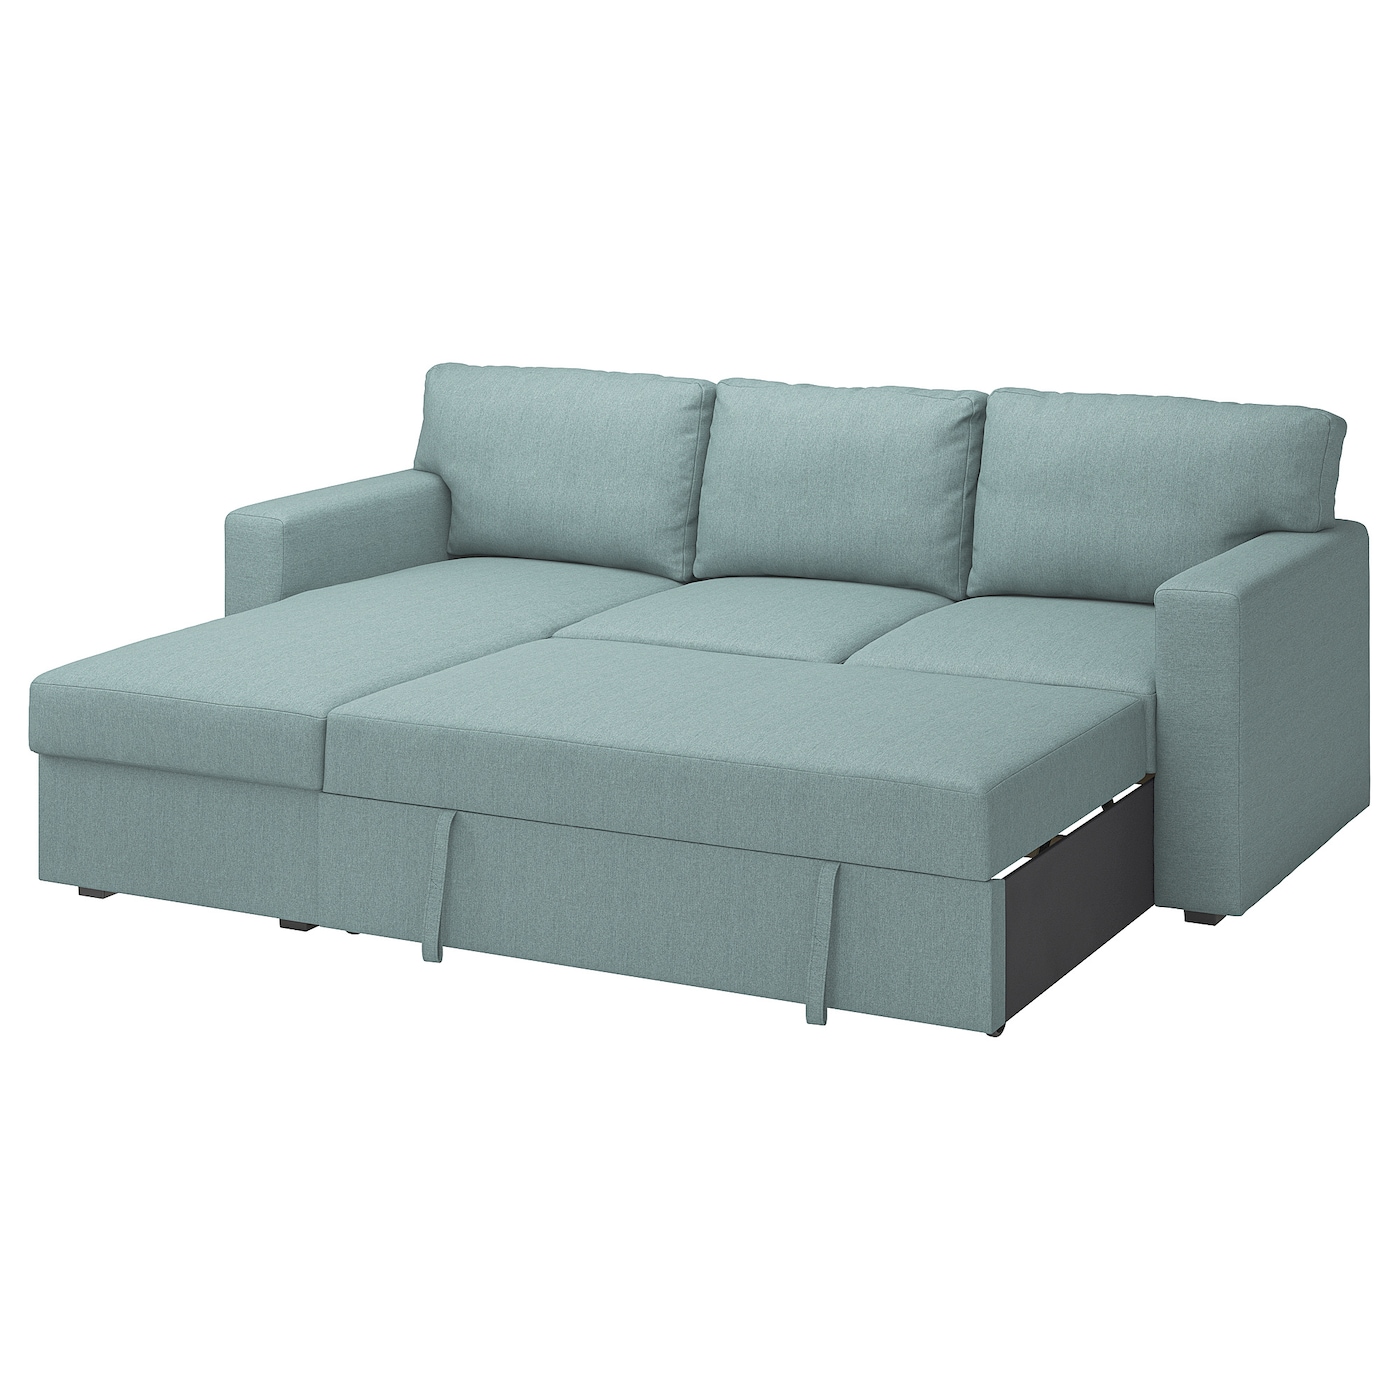 БОРСЛОВ 3-местный диван-кровать + диван, Тибблби светло-серый бирюзовый BÅRSLÖV IKEA одноместный простой диван для дома складной моющийся диван напольный диван повседневный стул для отдыха односпальная кровать